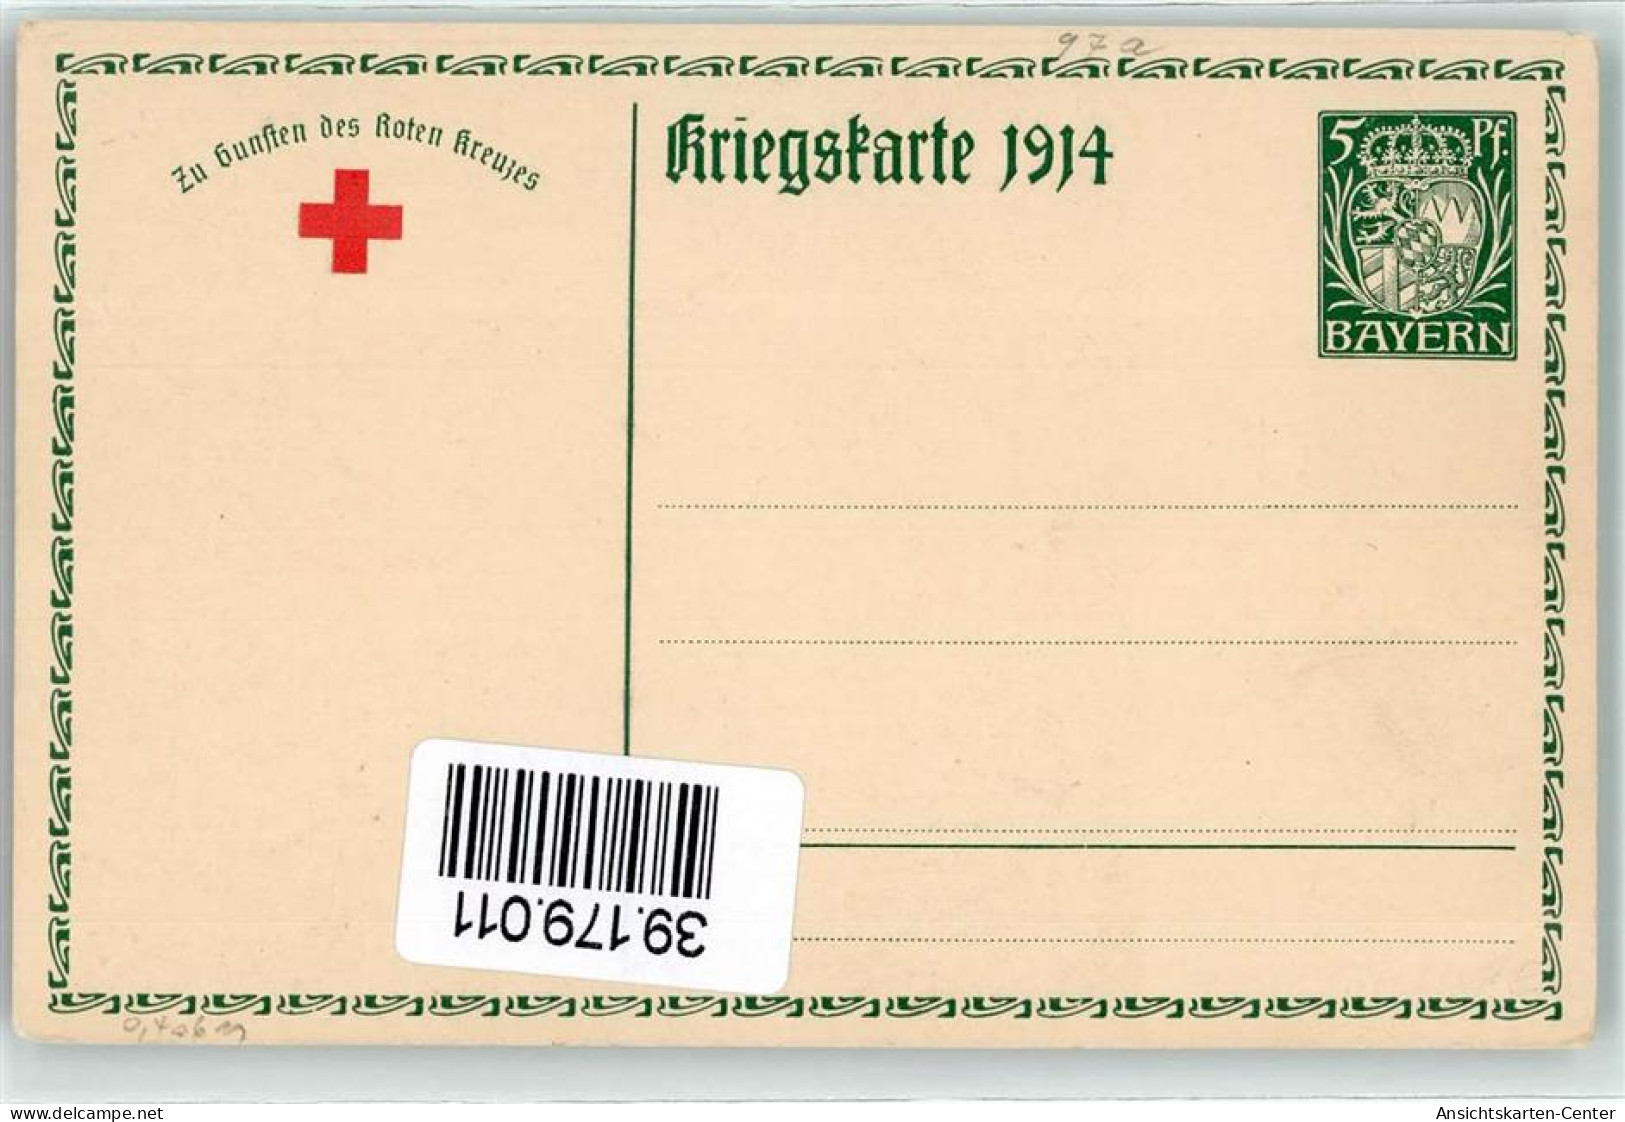 39179011 - Ludwig III Koenig Von Bayern  Gemaelde Von Firle Faksimile Unterschrift  AK - Postales